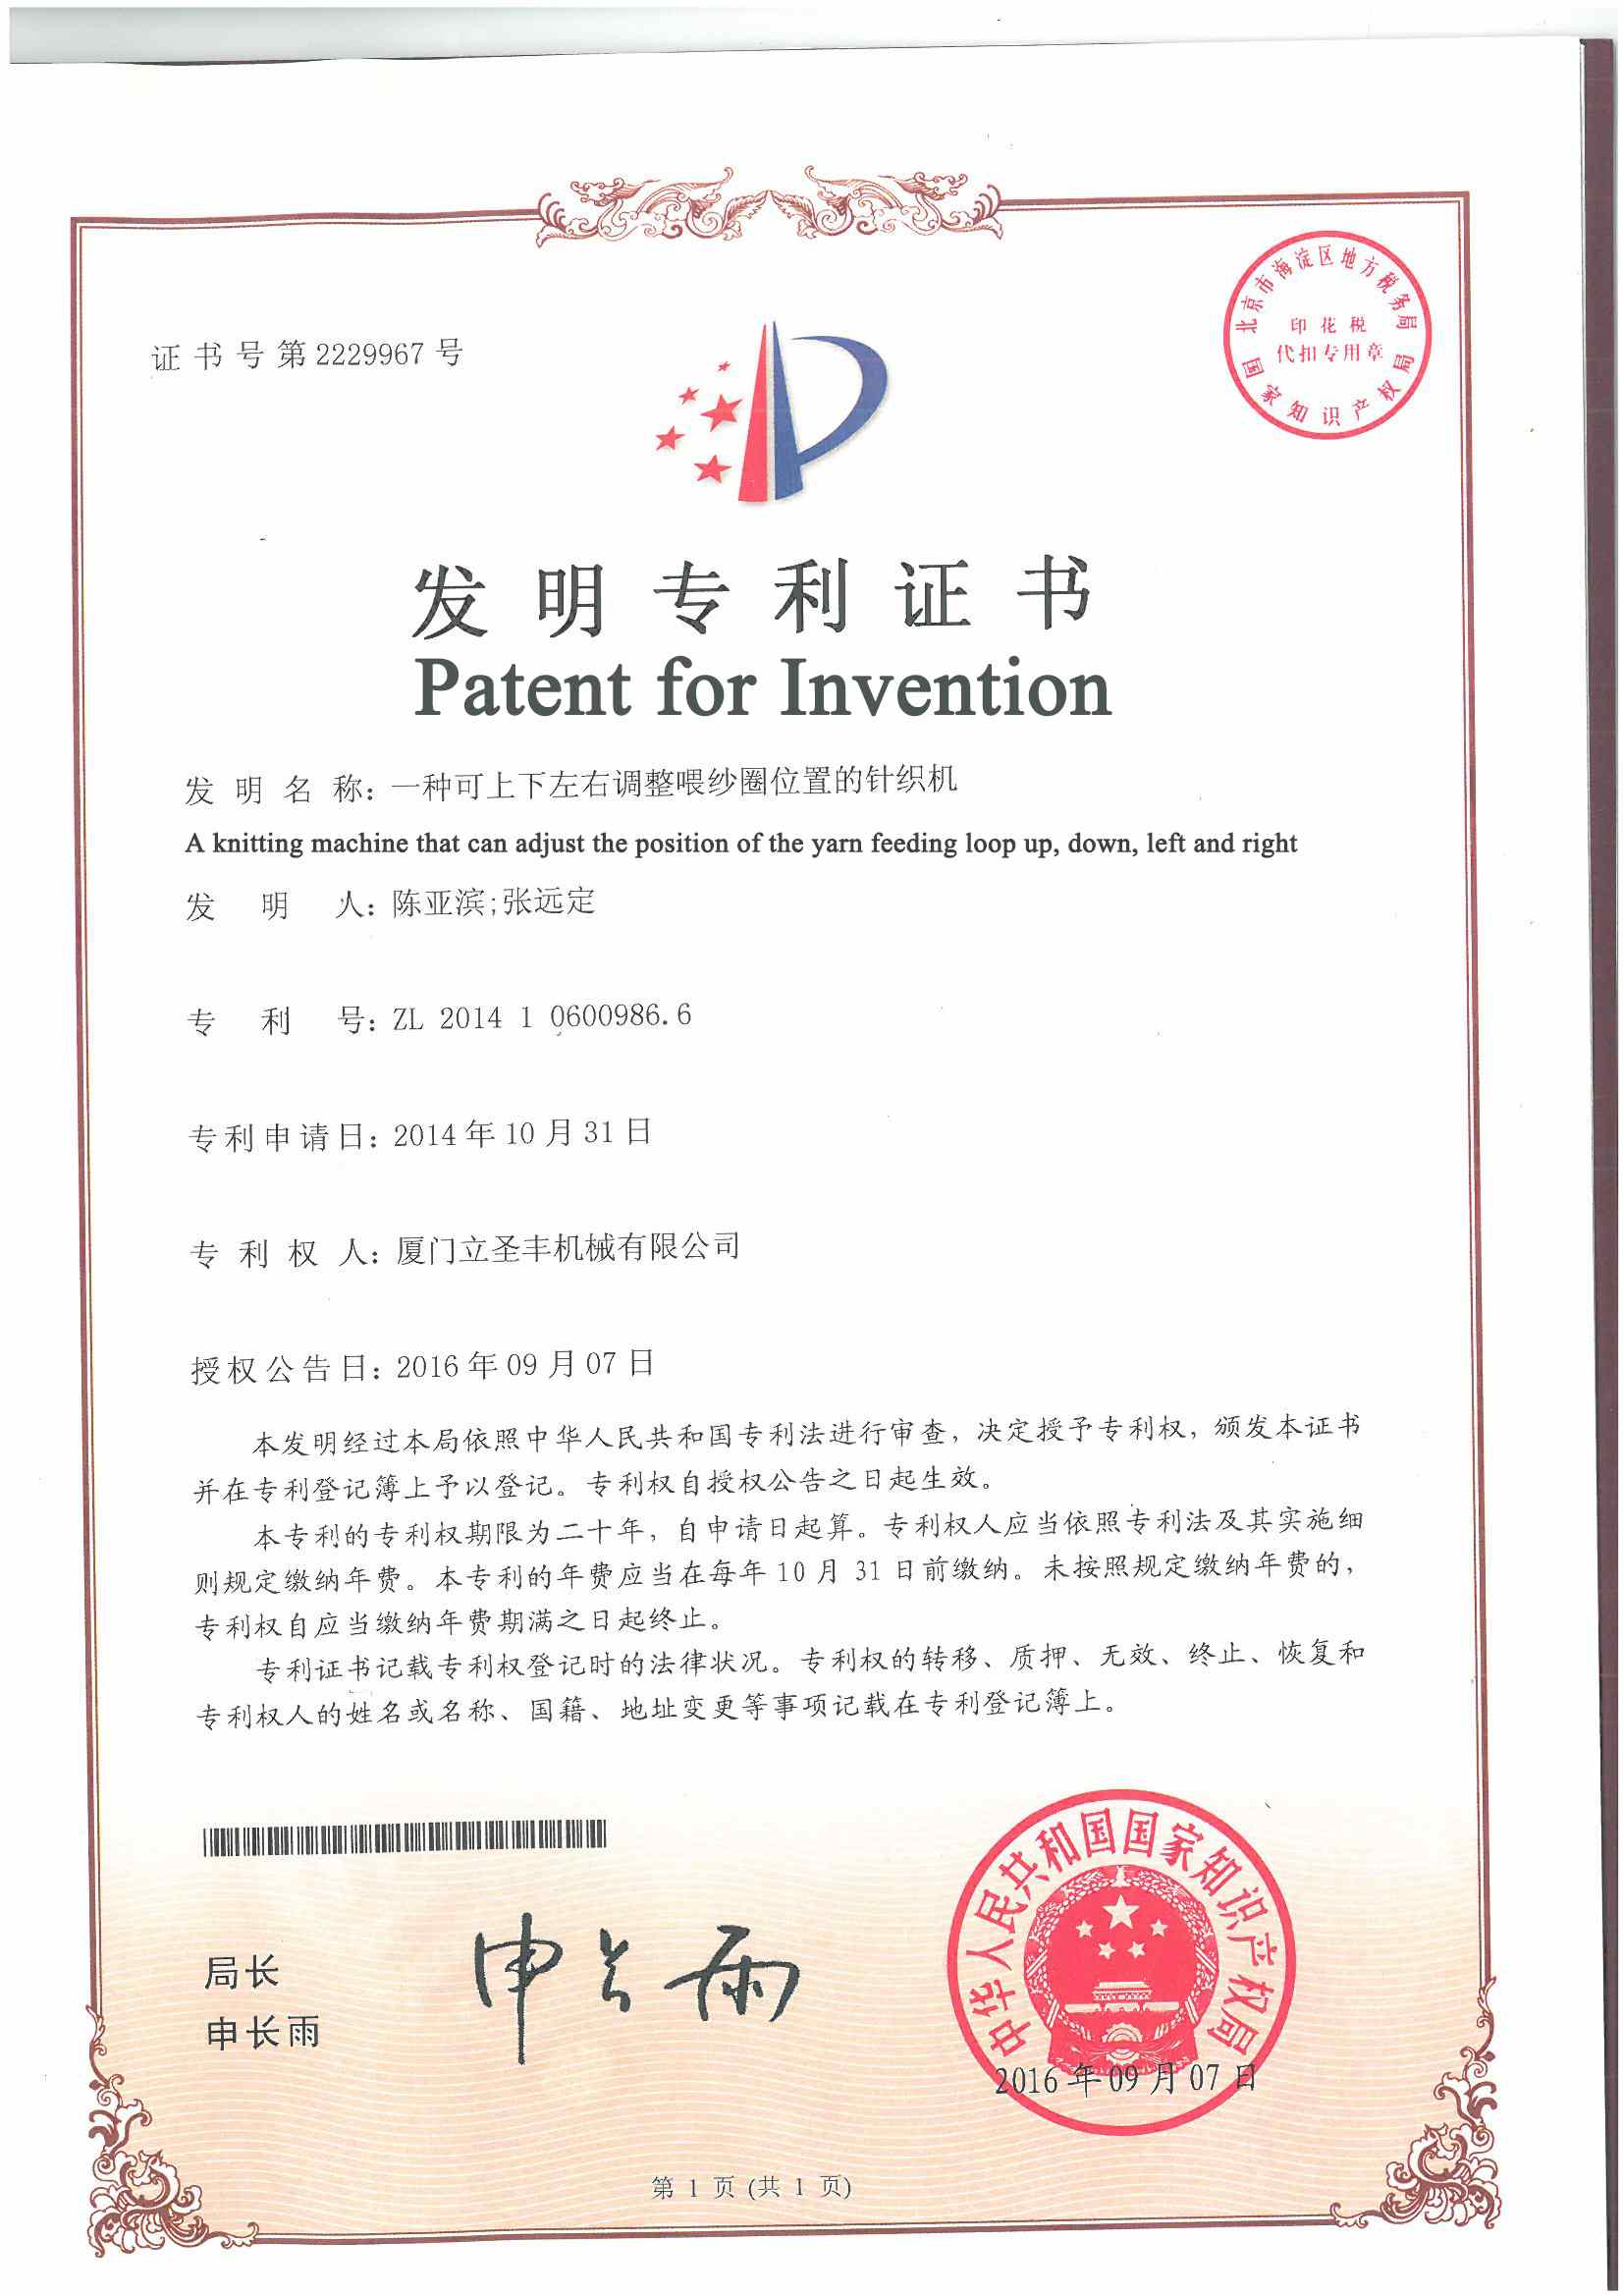 patentes
